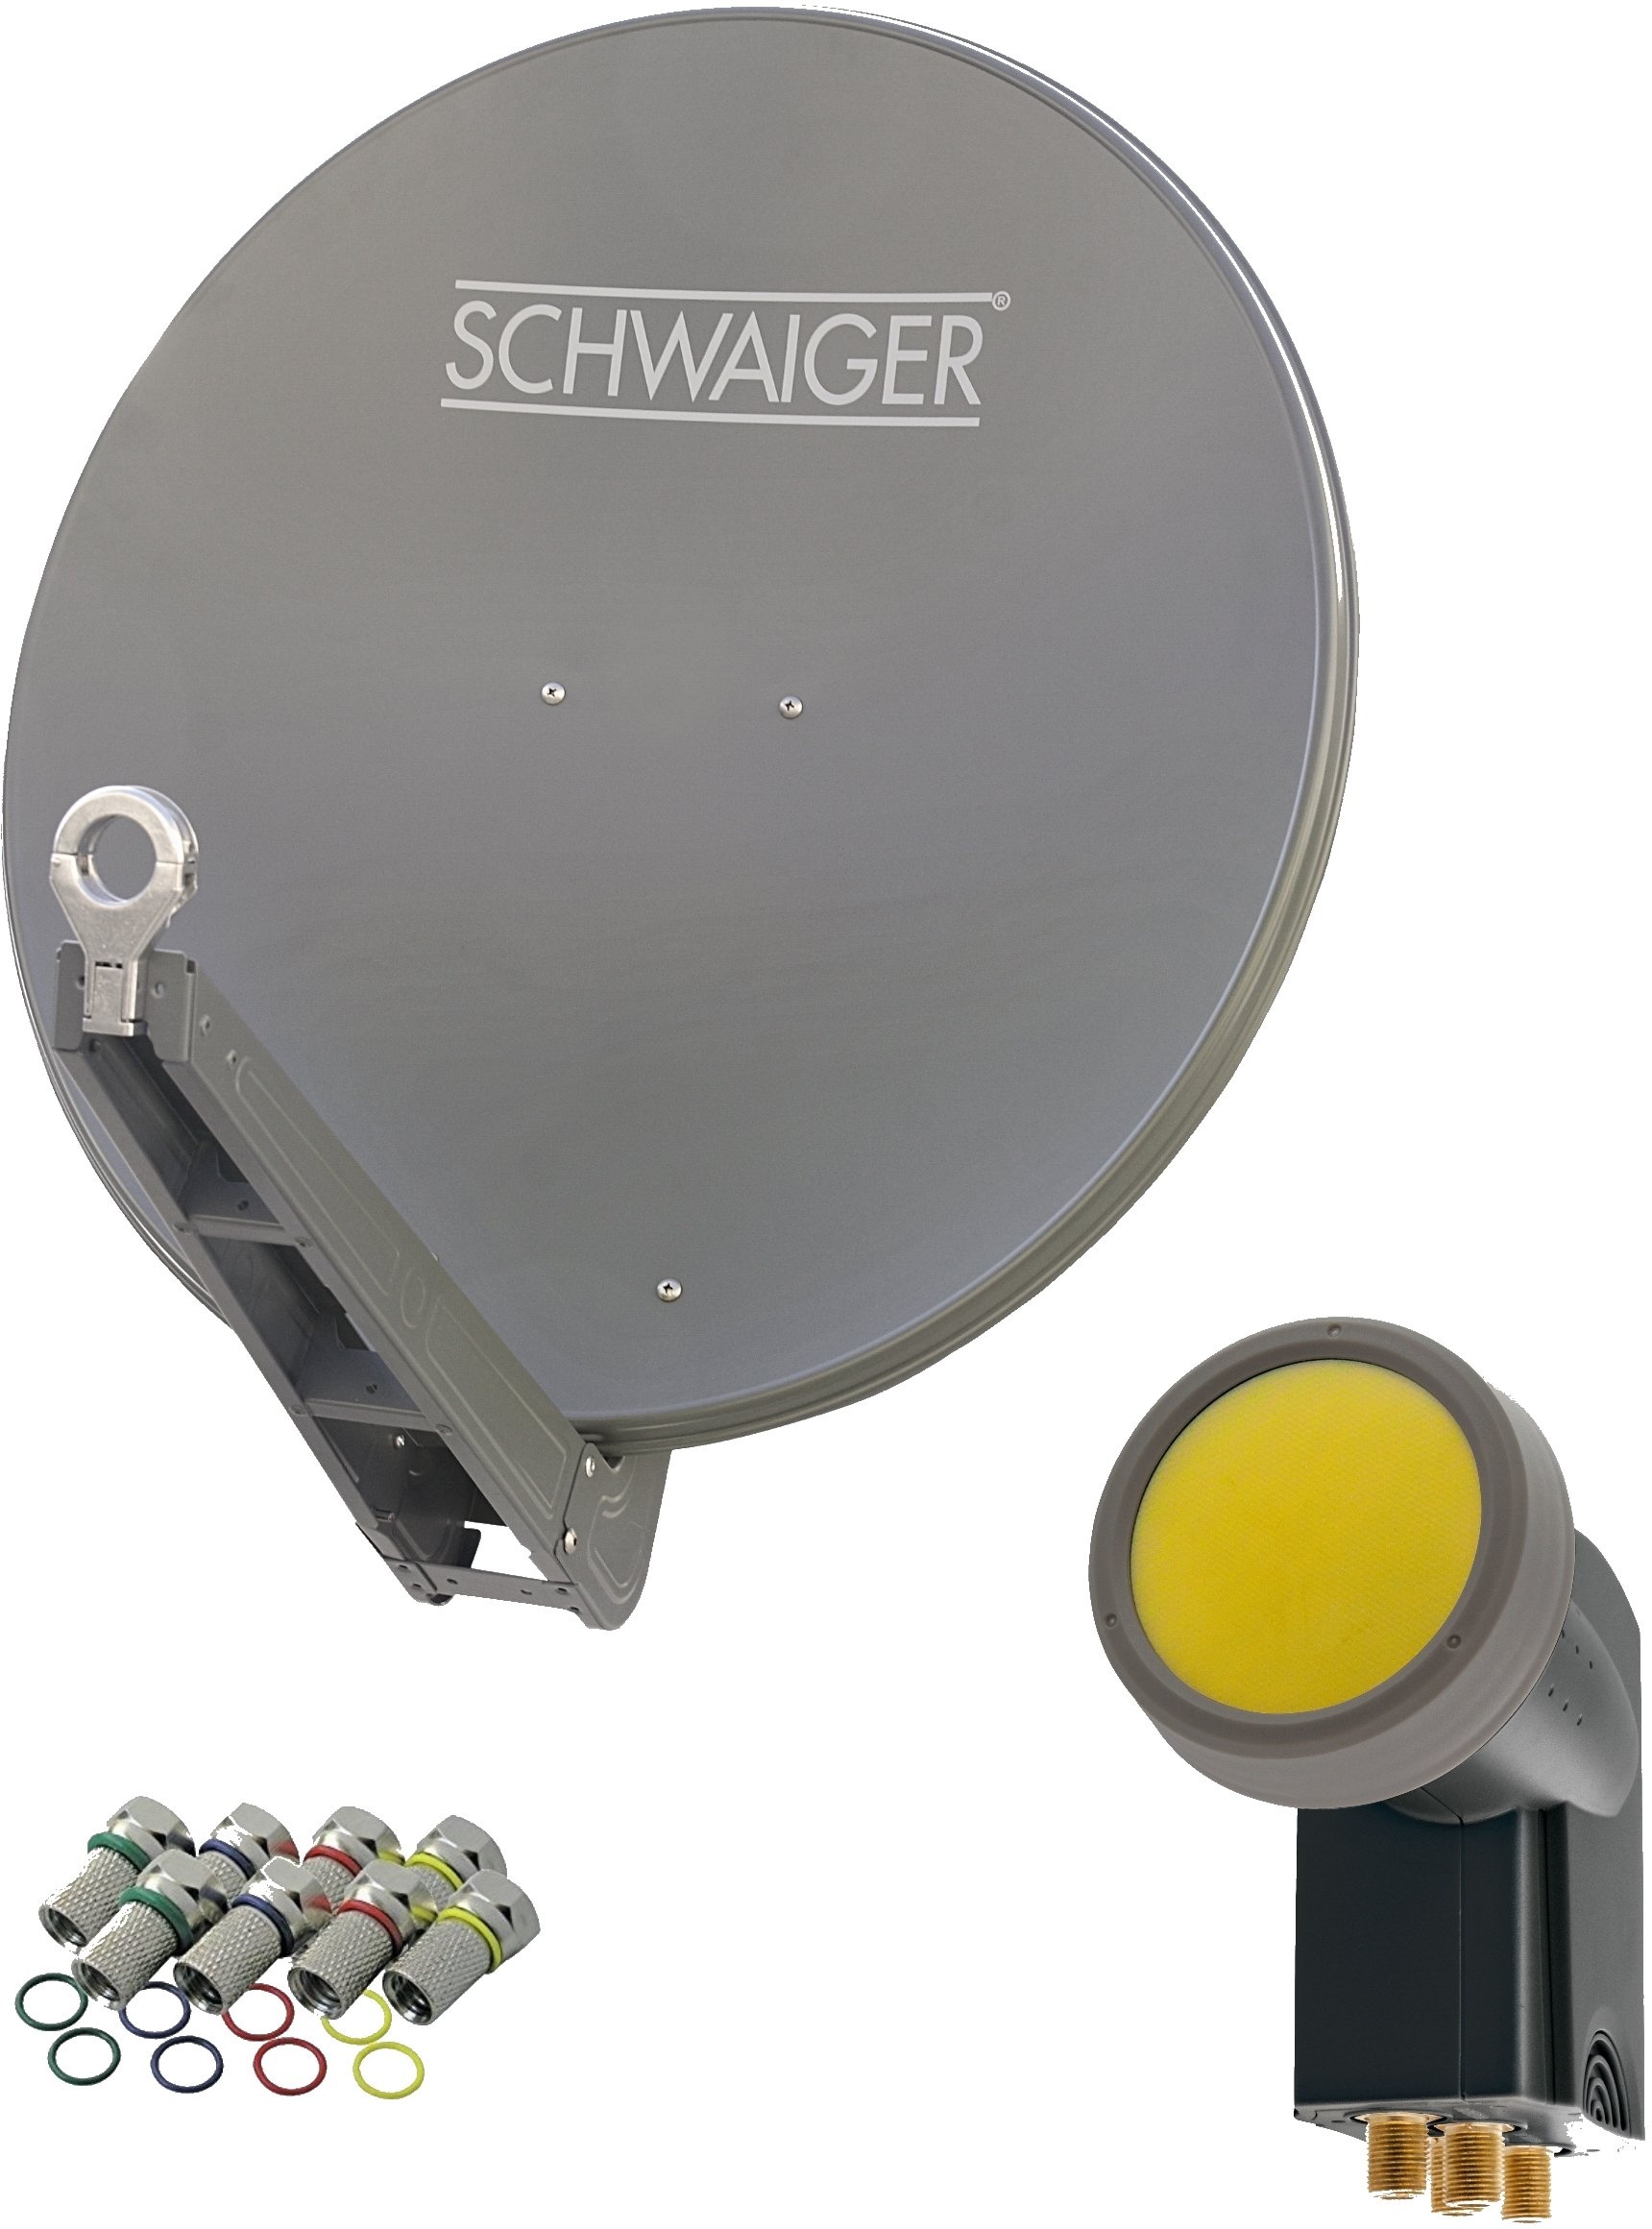 SCHWAIGER 4630 SAT-Anlage Satelliten-Set Satellitenschüssel Quad LNB digital 8X F-Stecker 7mm SAT-Antenne aus Aluminium Komplettset Anthrazit 75 x 80 cm